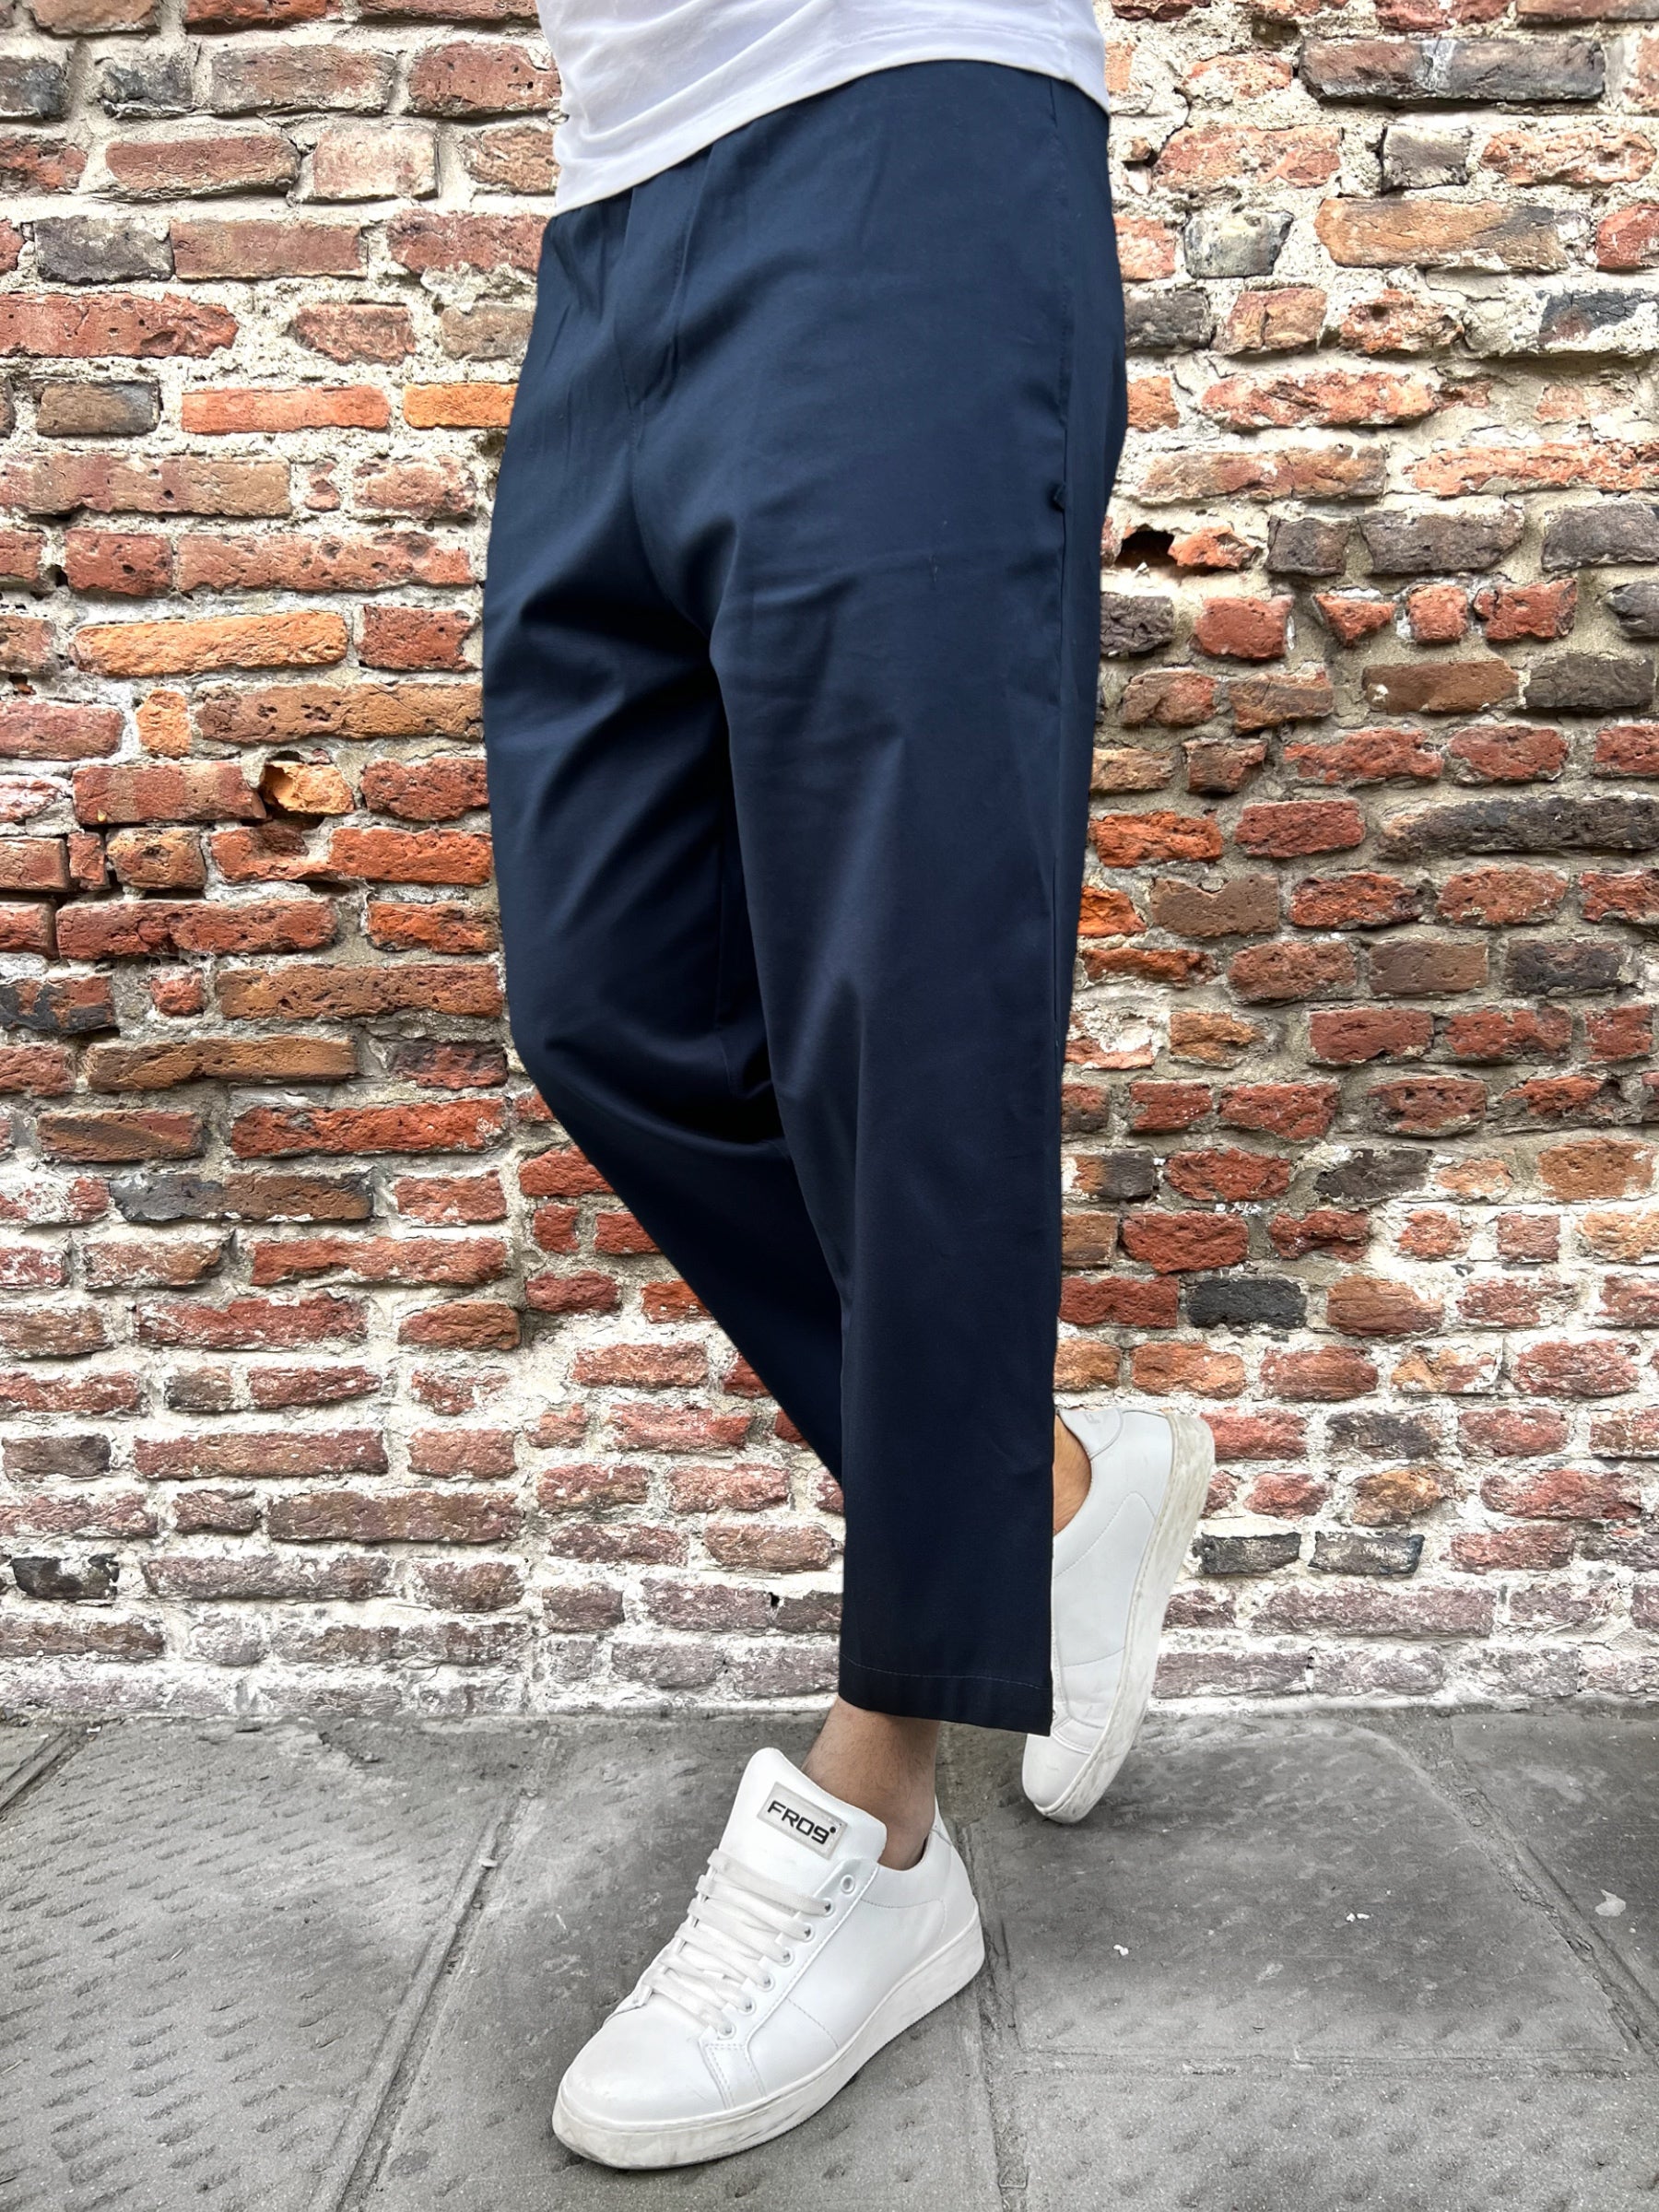 Pantalone Why Not Brand Shibuya Blu (8869484331348)